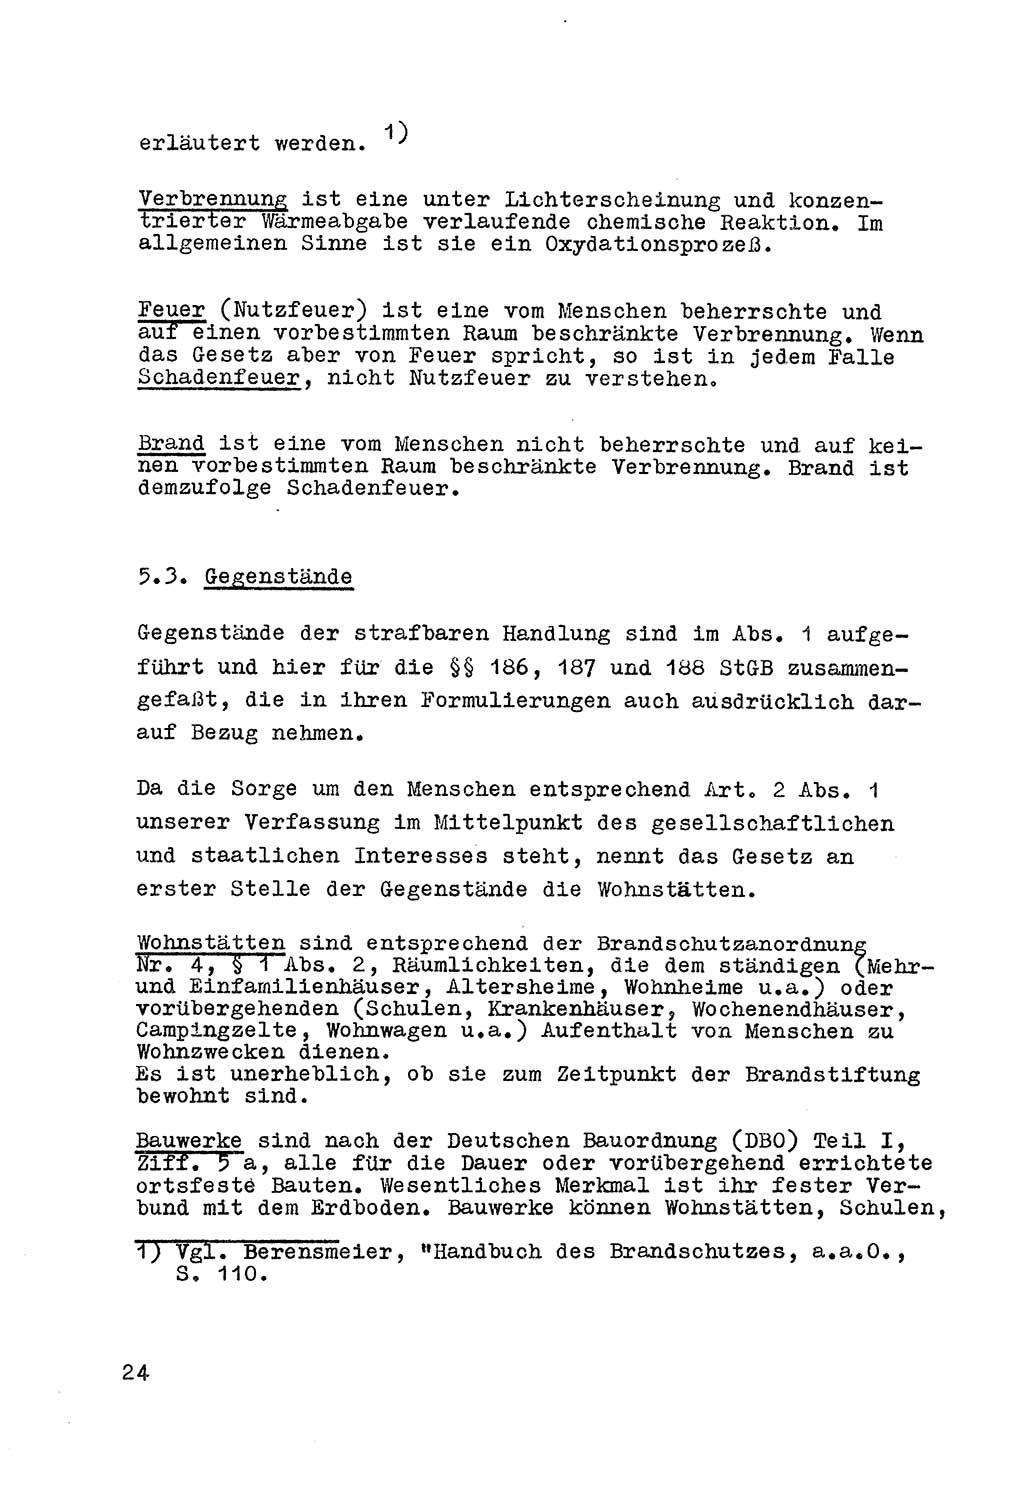 Strafrecht der DDR (Deutsche Demokratische Republik), Besonderer Teil, Lehrmaterial, Heft 7 1970, Seite 24 (Strafr. DDR BT Lehrmat. H. 7 1970, S. 24)